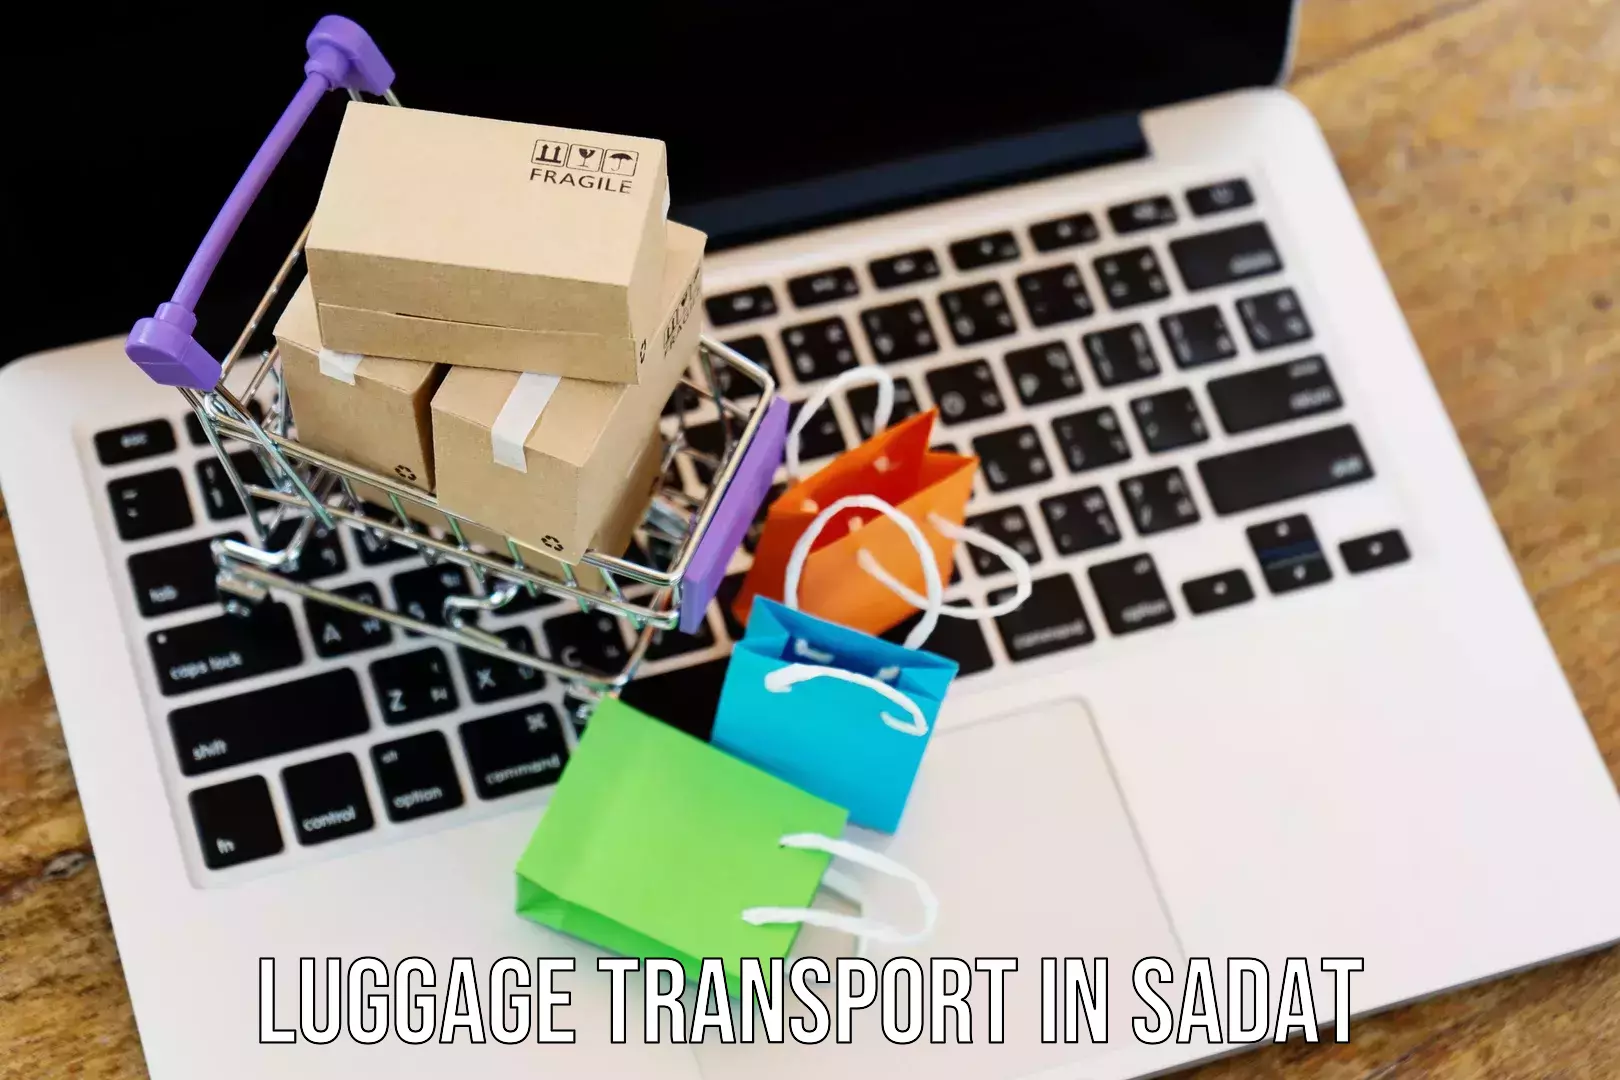 Baggage transport estimate in Sadat